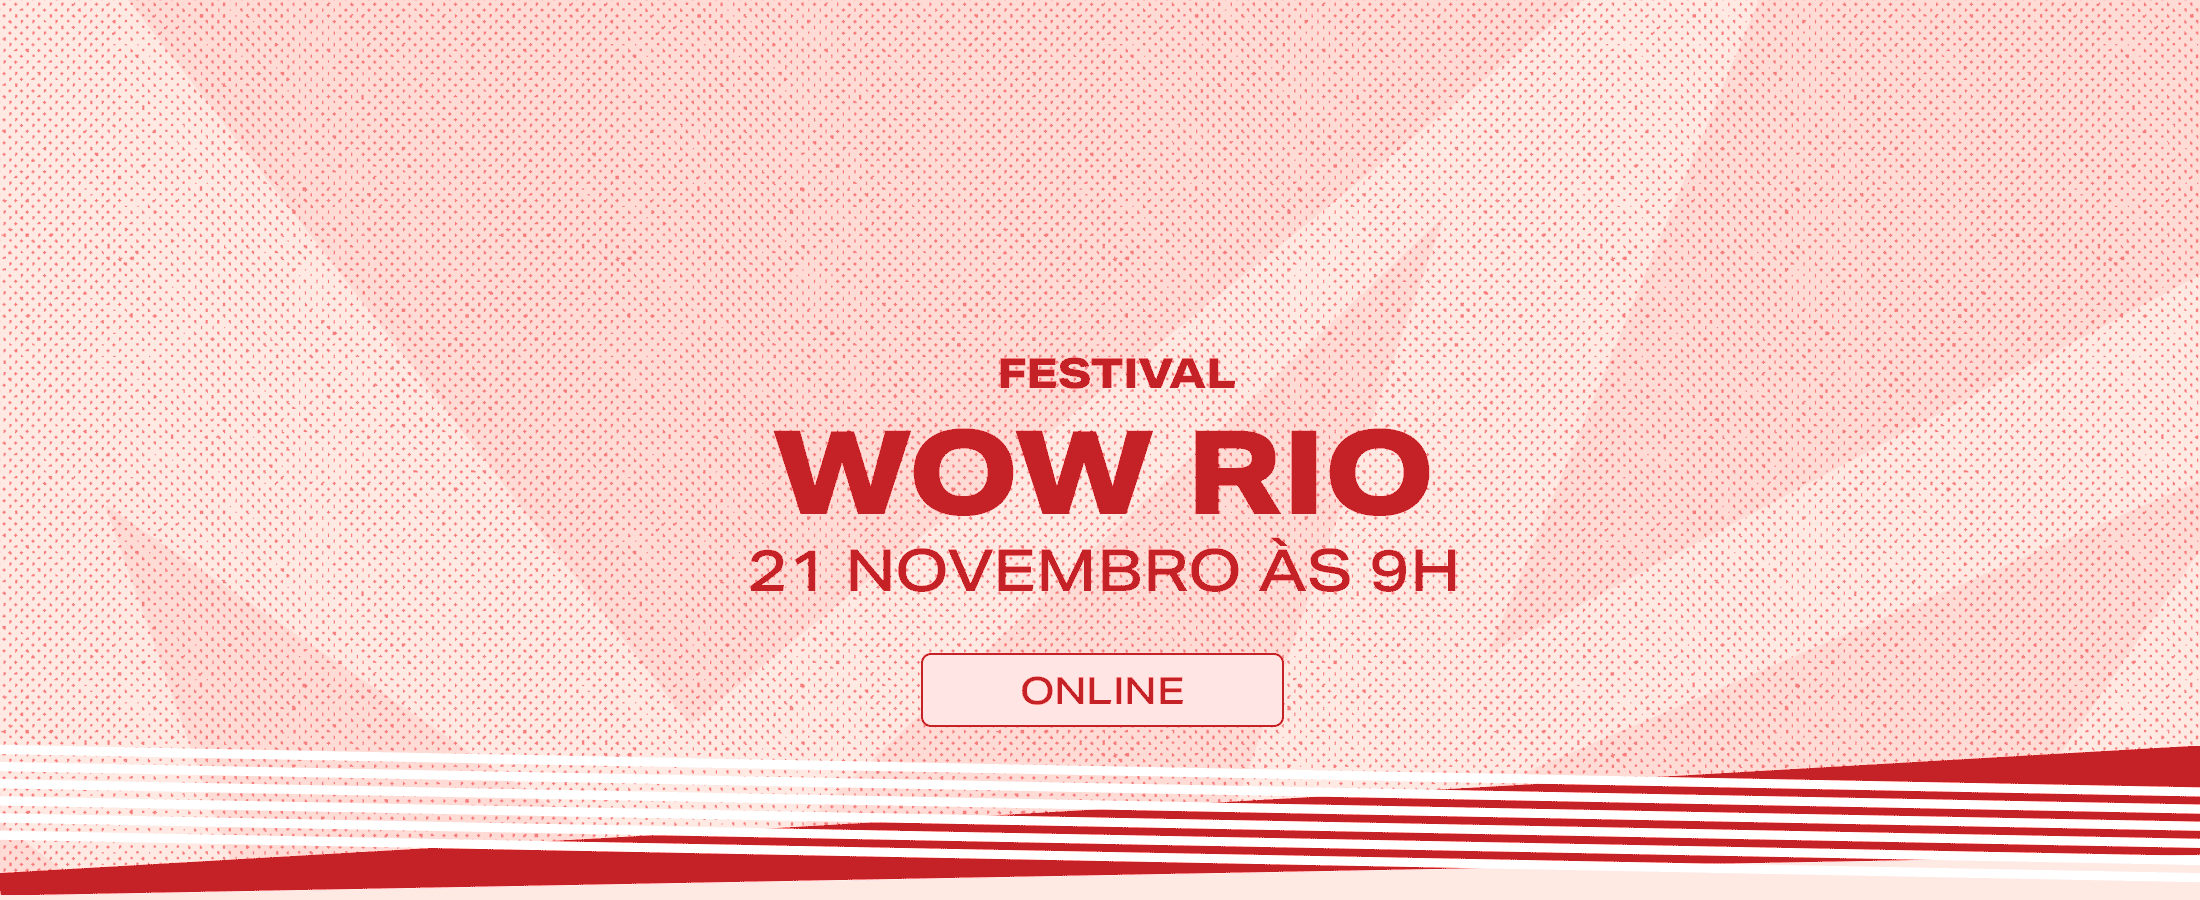 WOW Festival Mulheres do Mundo RIO 2020 ocorre online no sábado, 21 de novembro 